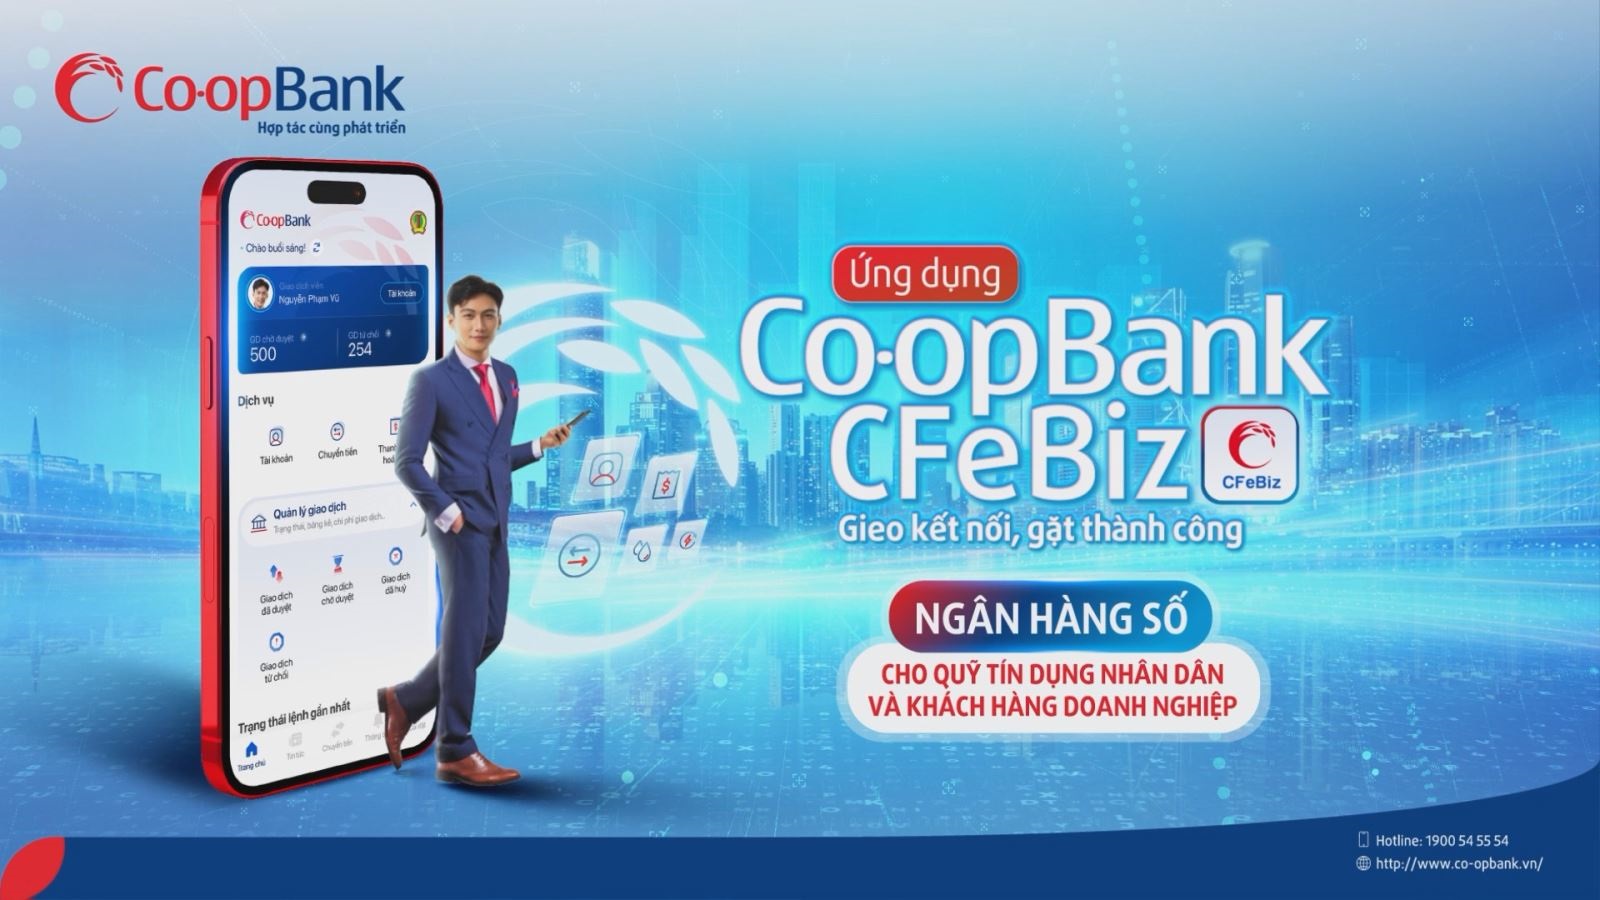 Co-opBank CFeBiz